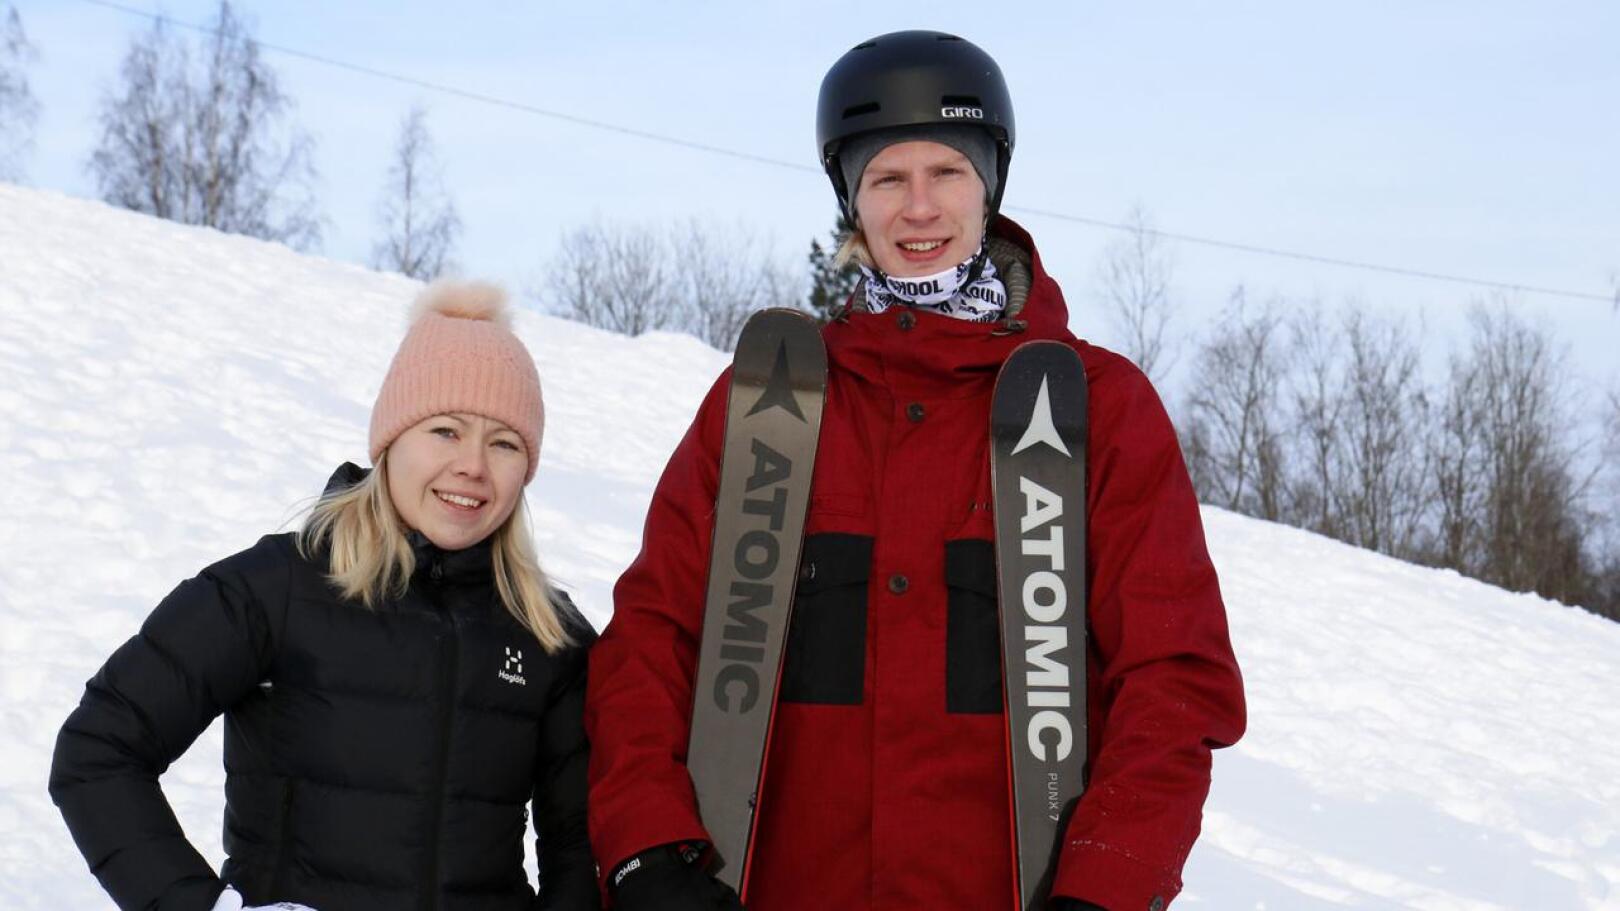 Vuokatissa laskettelunopettajaksi kouluttautunut ja siellä työskennellyt Lasse Peltoniemi laskee suksilla ja toinen ohjaaja Jenny Järvelä lumilaudalla.